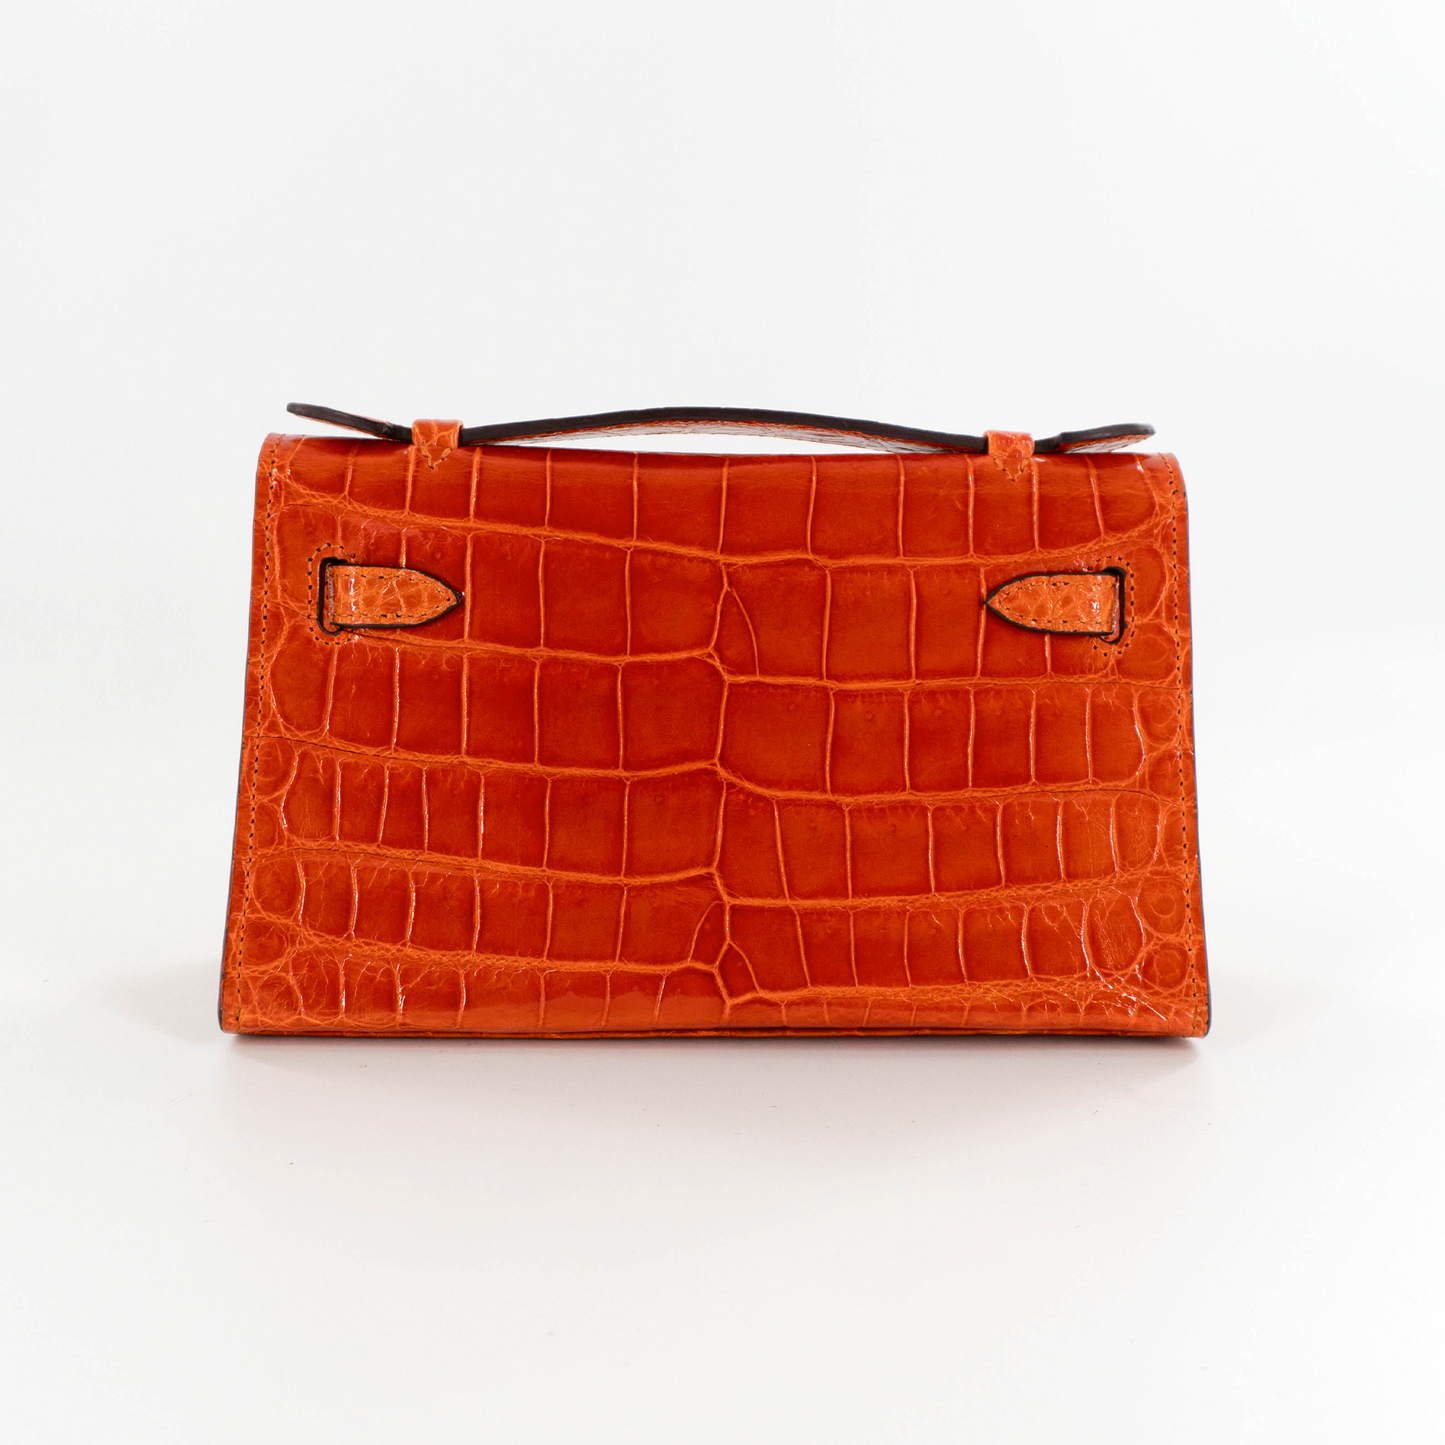 Princess Petite Handbag in Orange Shiny Crocodile Belly Skin